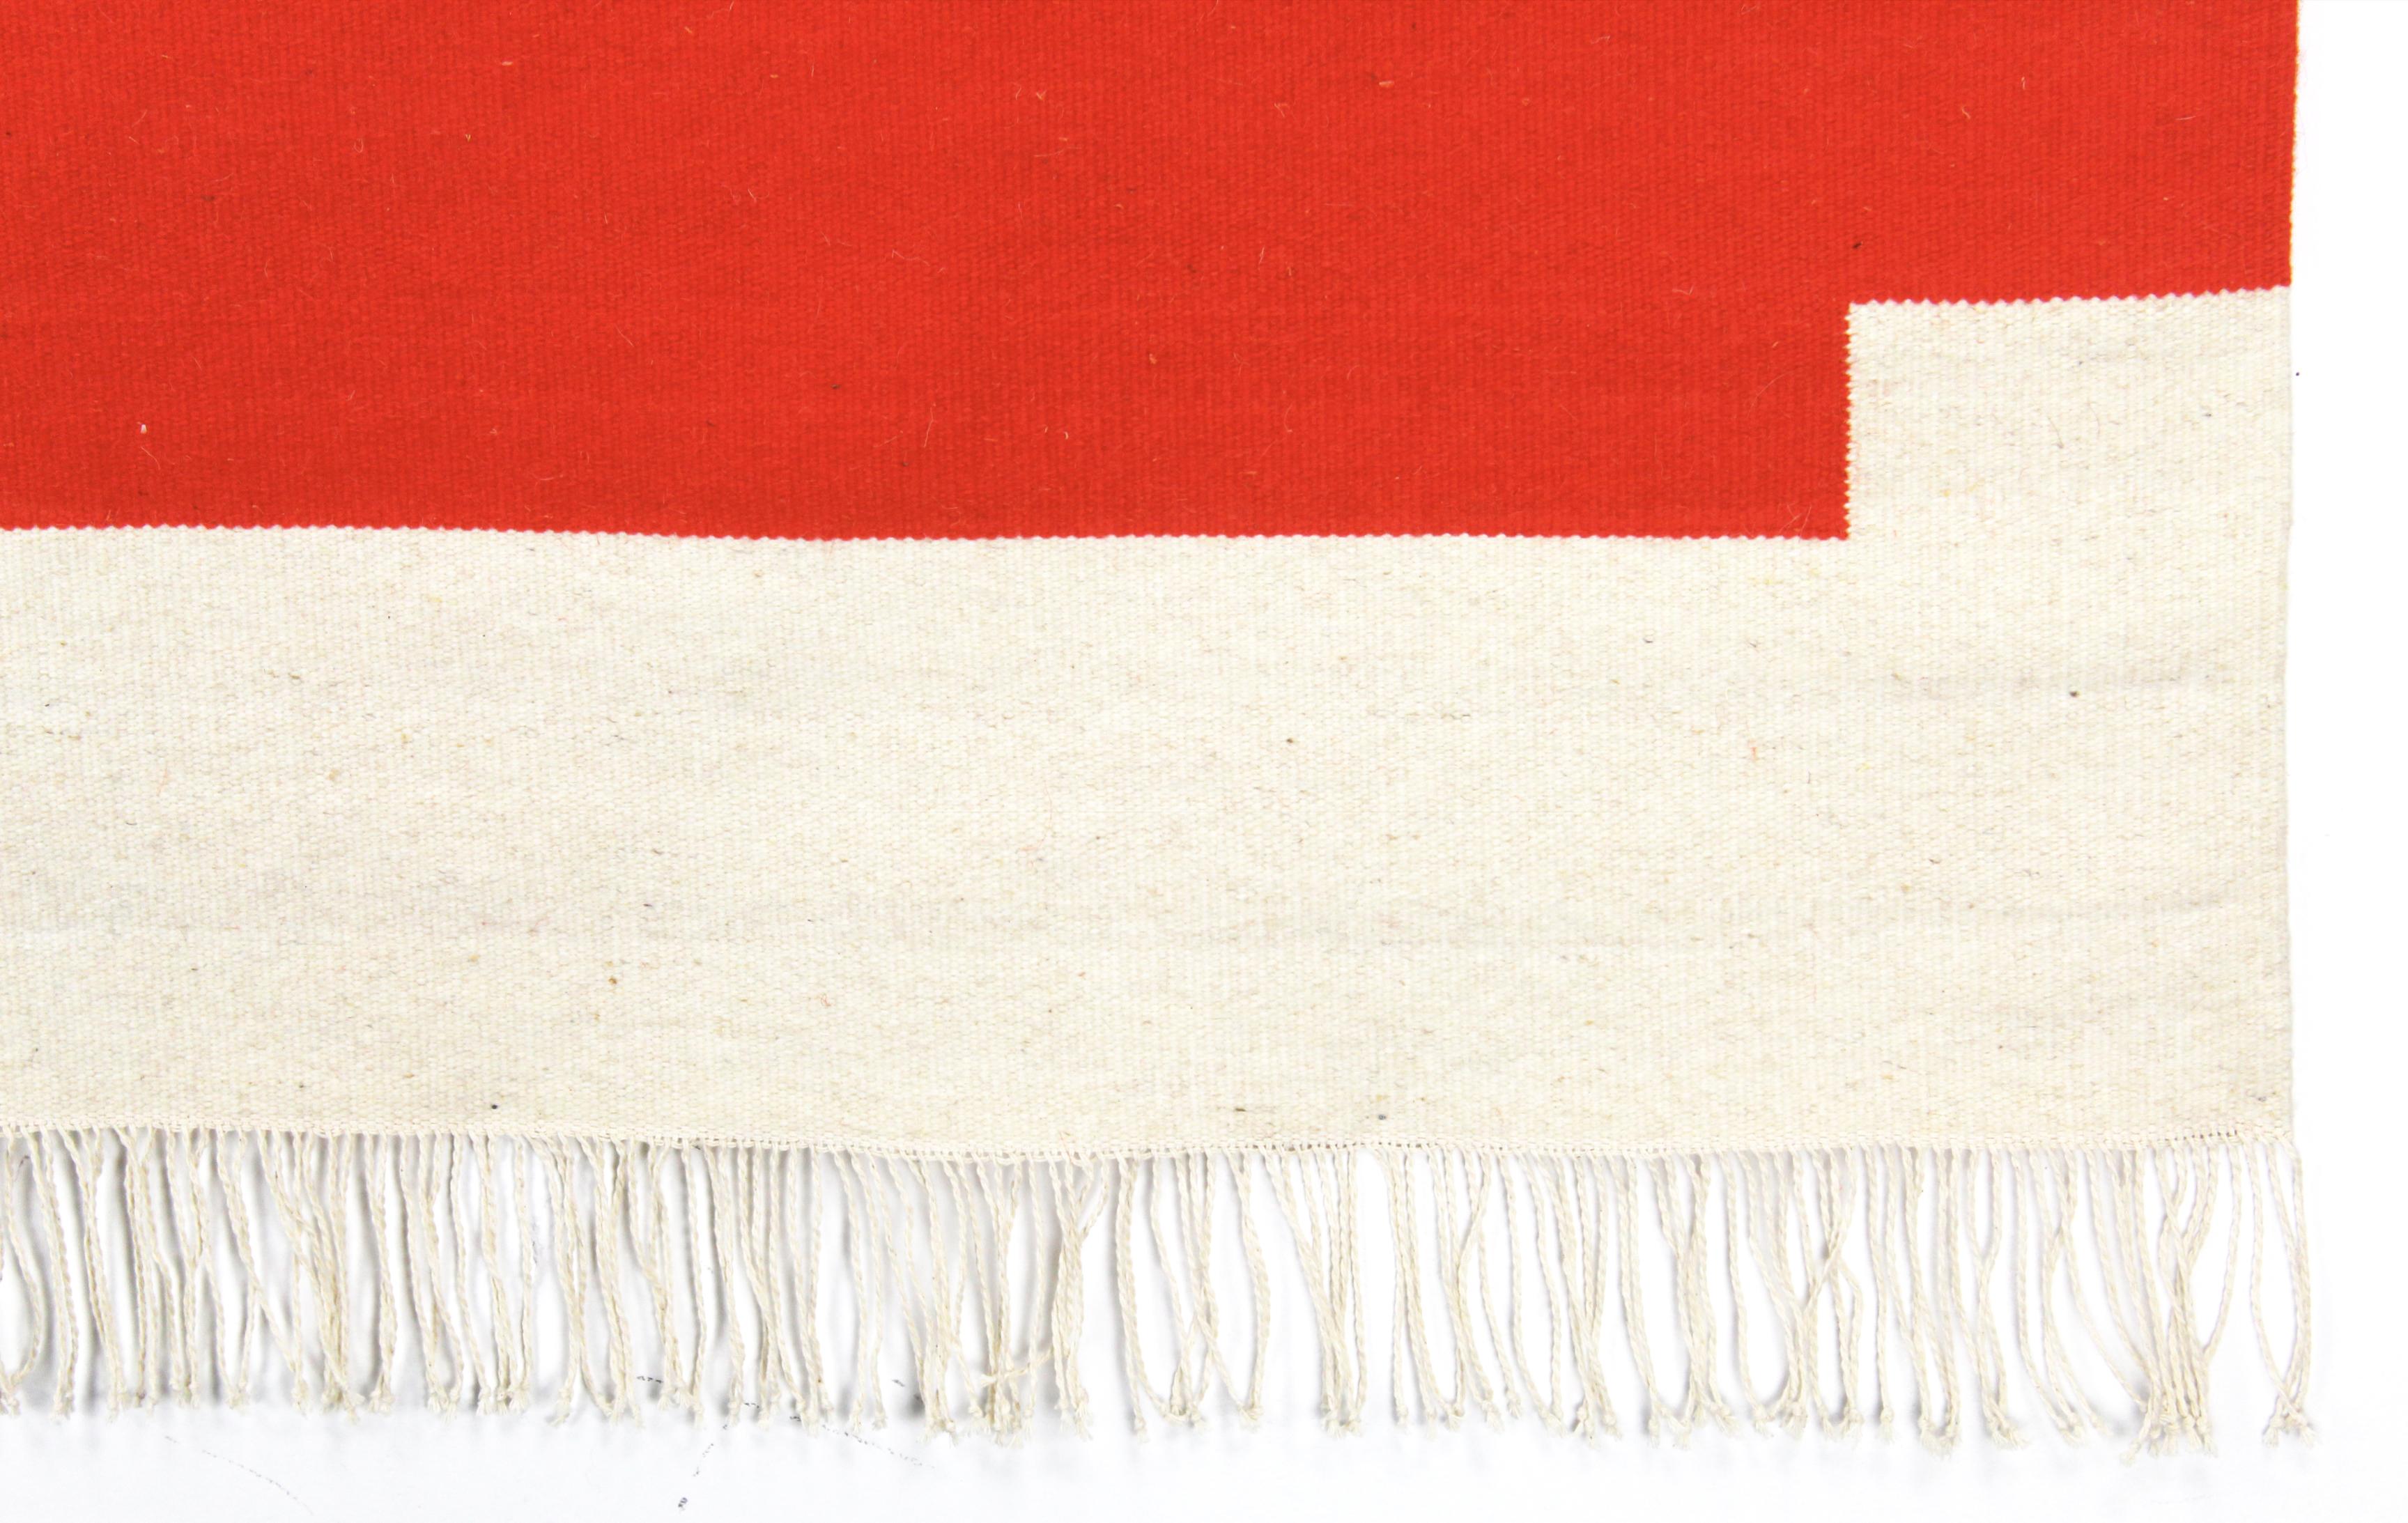 Dieser Teppich ist ein einzigartiges Erbstück. Inspiriert von Brutalismus, skandinavischem Minimalismus und mexikanischen Traditionen entstand ein einzigartiges Stück, das in jedem Raum auffällt. 

Andrew Boos versucht neu zu definieren, was ein